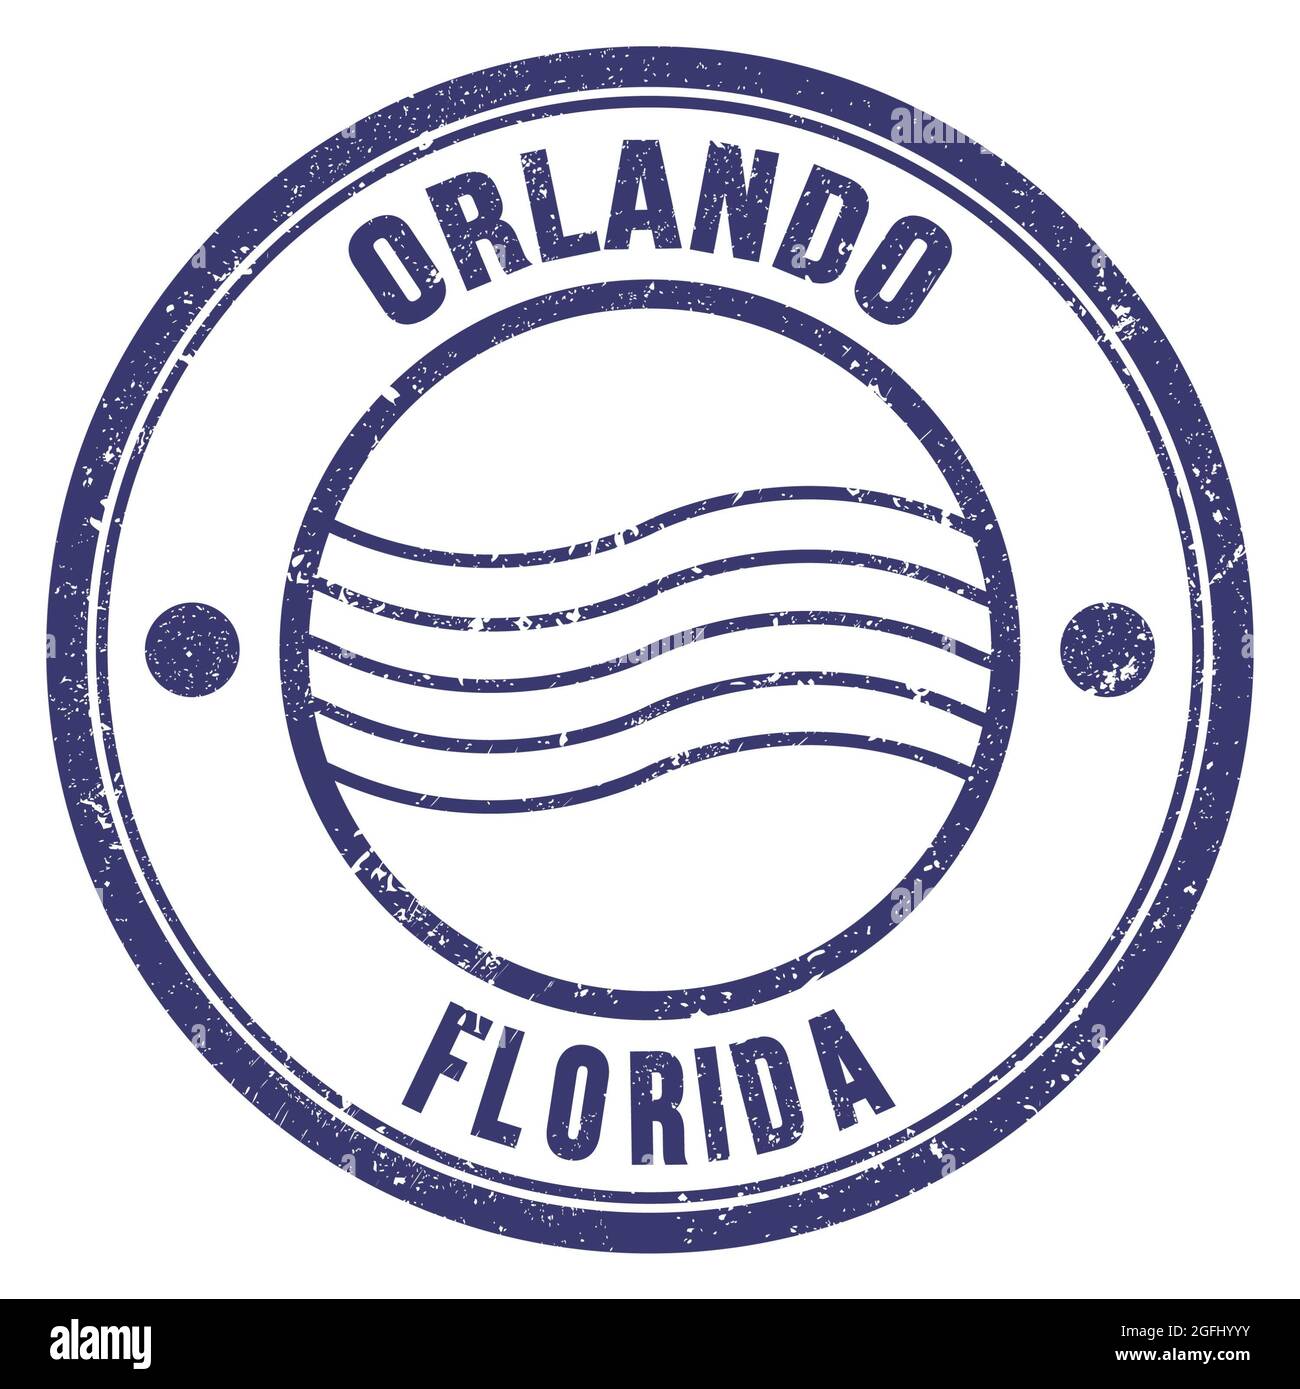 ORLANDO - FLORIDA, palabras escritas en sello postal redondo azul  Fotografía de stock - Alamy